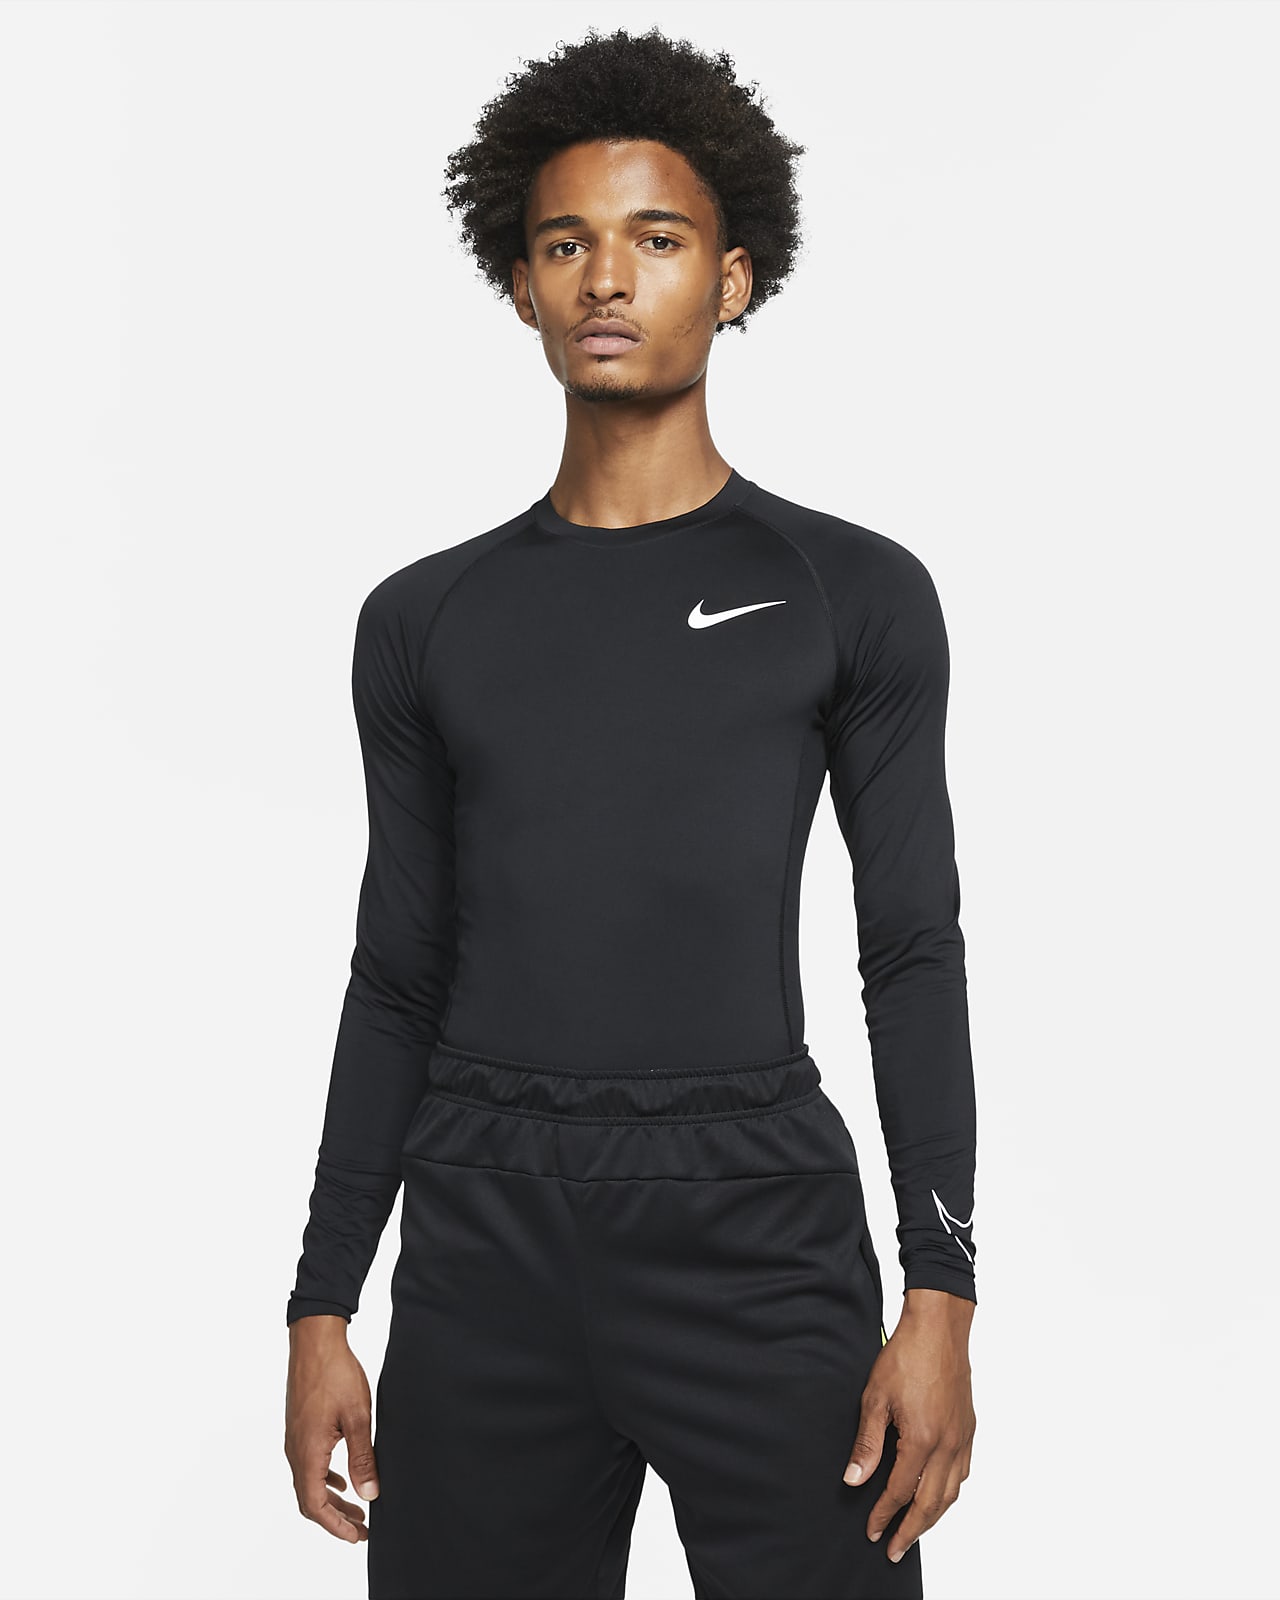 Plenarmøde Inspirere elegant Nike Pro Dri-FIT Men's Tight Fit Long-Sleeve Top. Nike.com